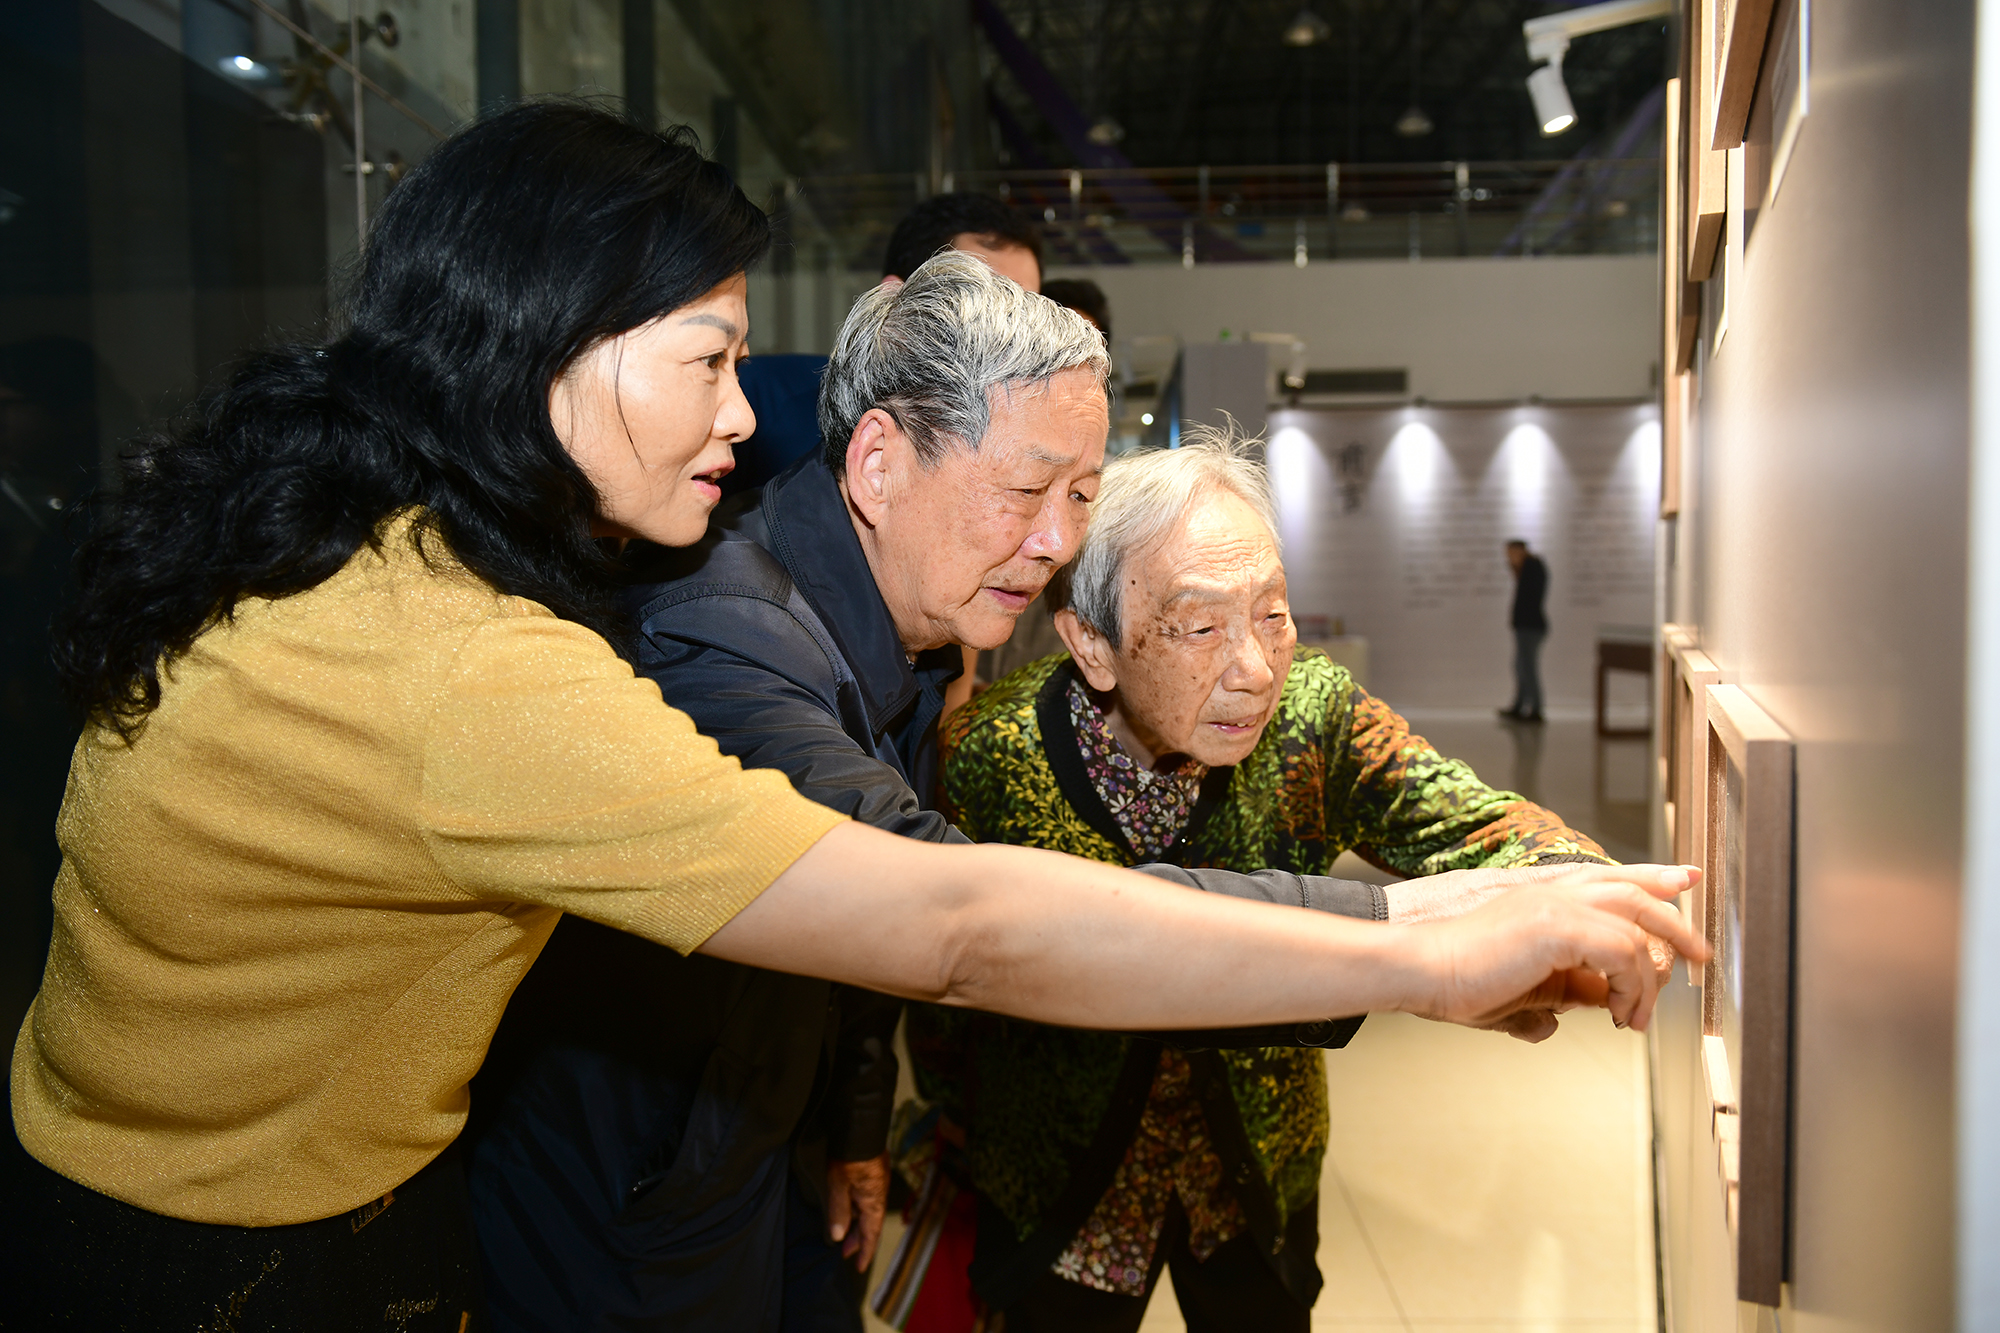 傅廷栋院士曾携家人及课题组成员到场观展（记者 刘涛 摄）